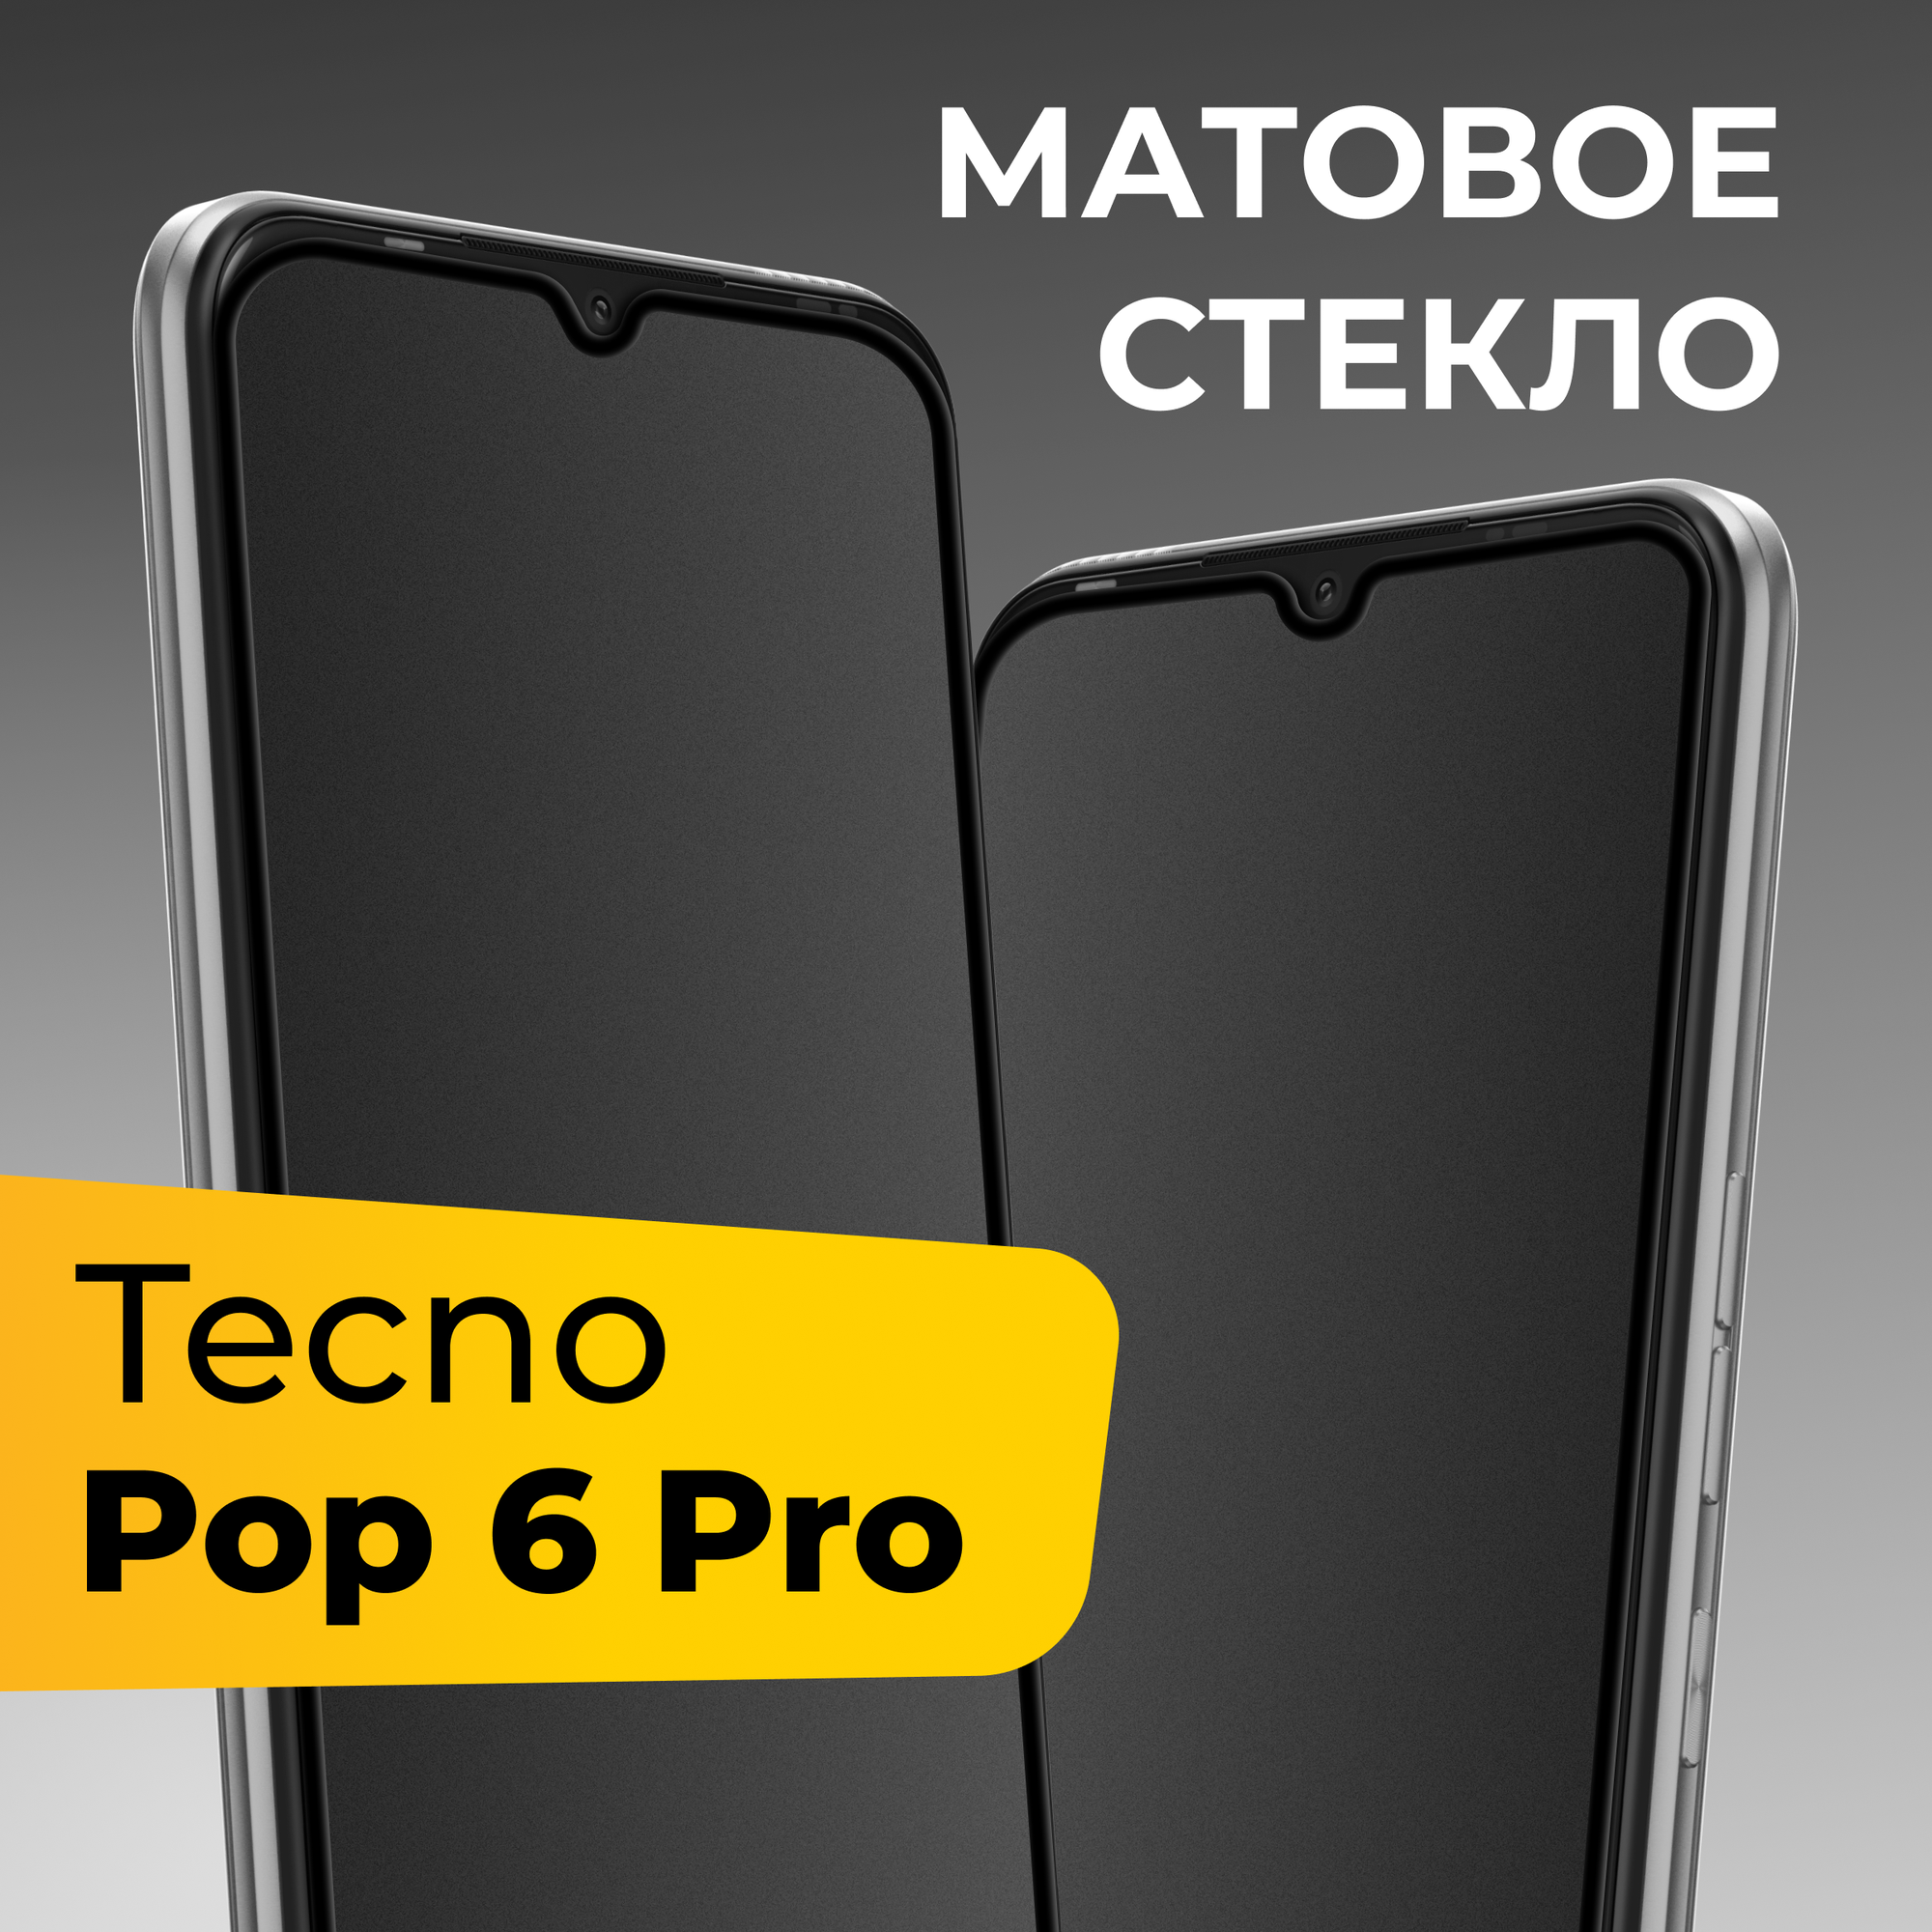 Матовое защитное стекло с полным покрытием экрана для смартфона Tecno Pop 6 Pro / Противоударное закаленное стекло на телефон Текно Поп 6 Про